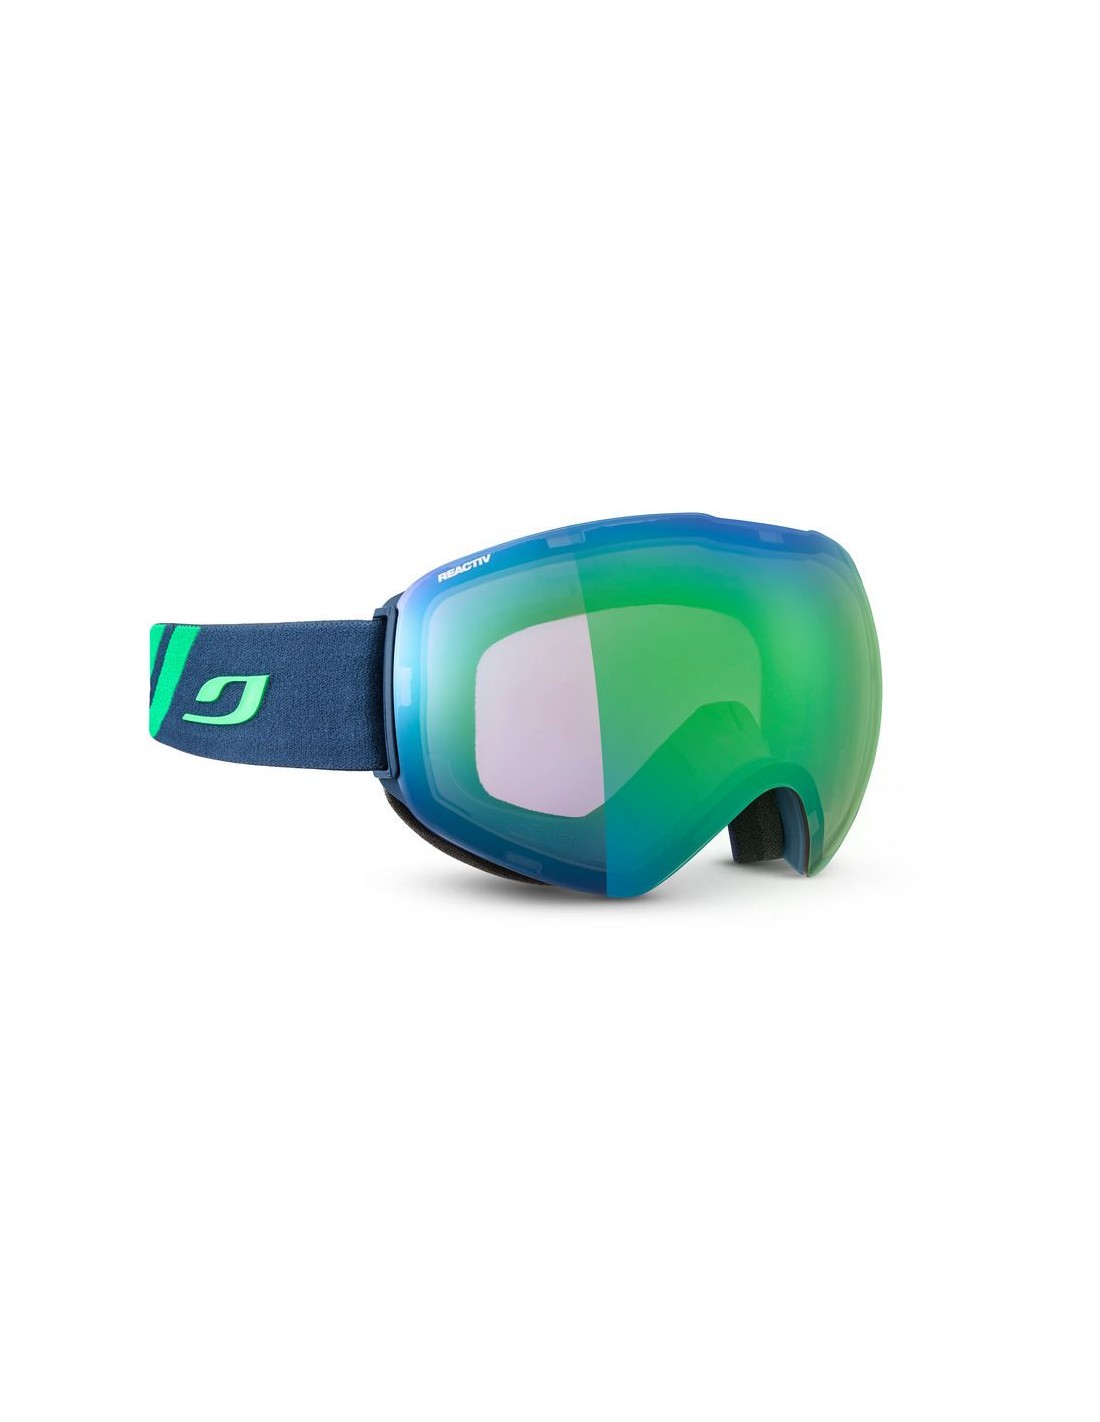 Julbo Skibrille Skydome, schwarz/weiß, limitless vision, Reactive Glare Control 2-3, Grüne Beschichtung Skibrillenvariante - Einheitsgröße Erwachsene, Skibrillenfarbe - Blue, von Julbo